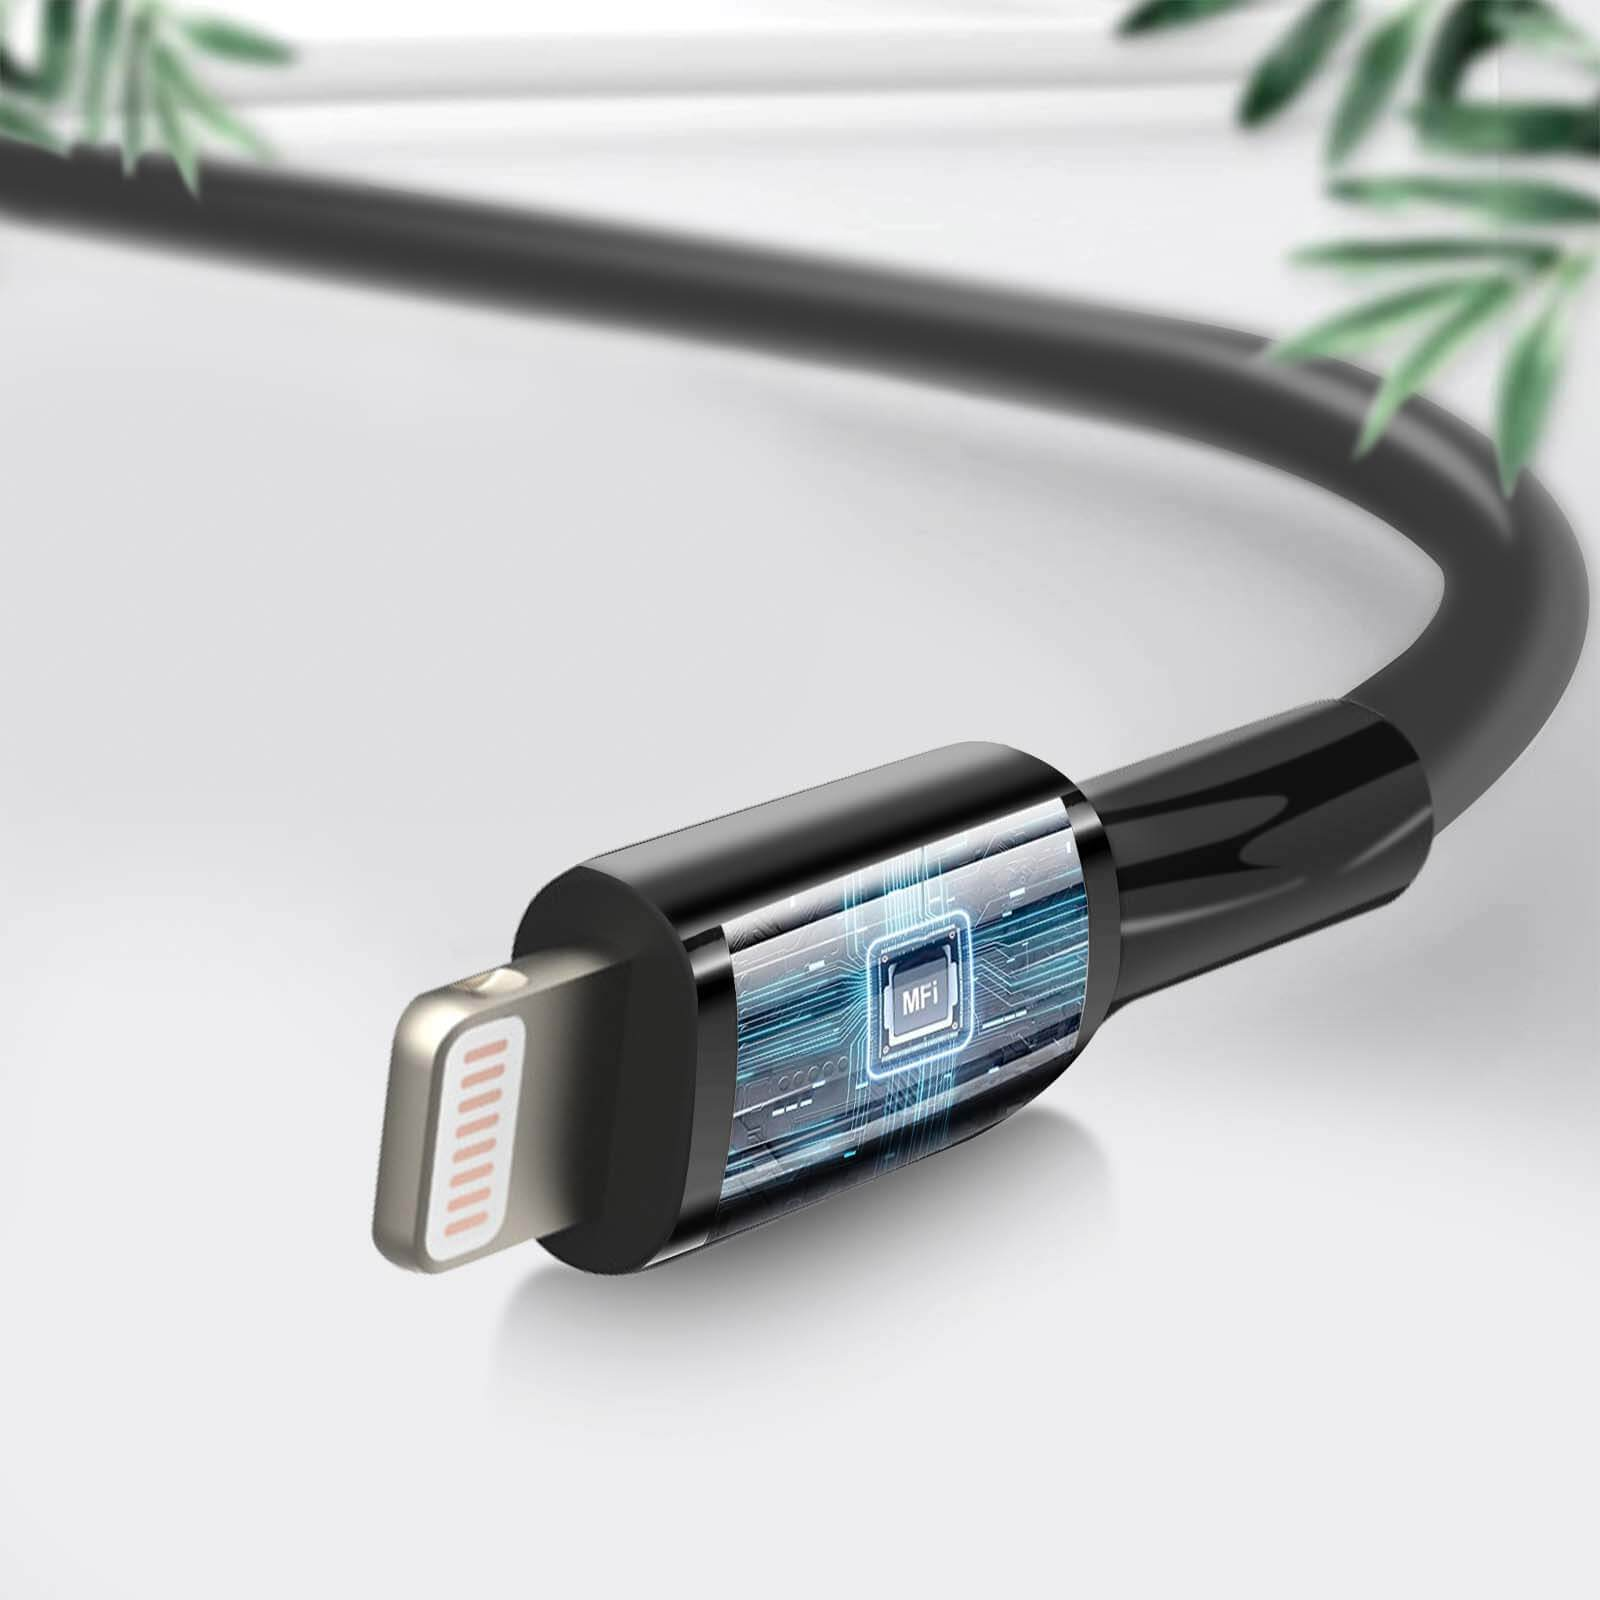 BELKIN 1m MFi Kabel / USB Lightning USB-Kabel